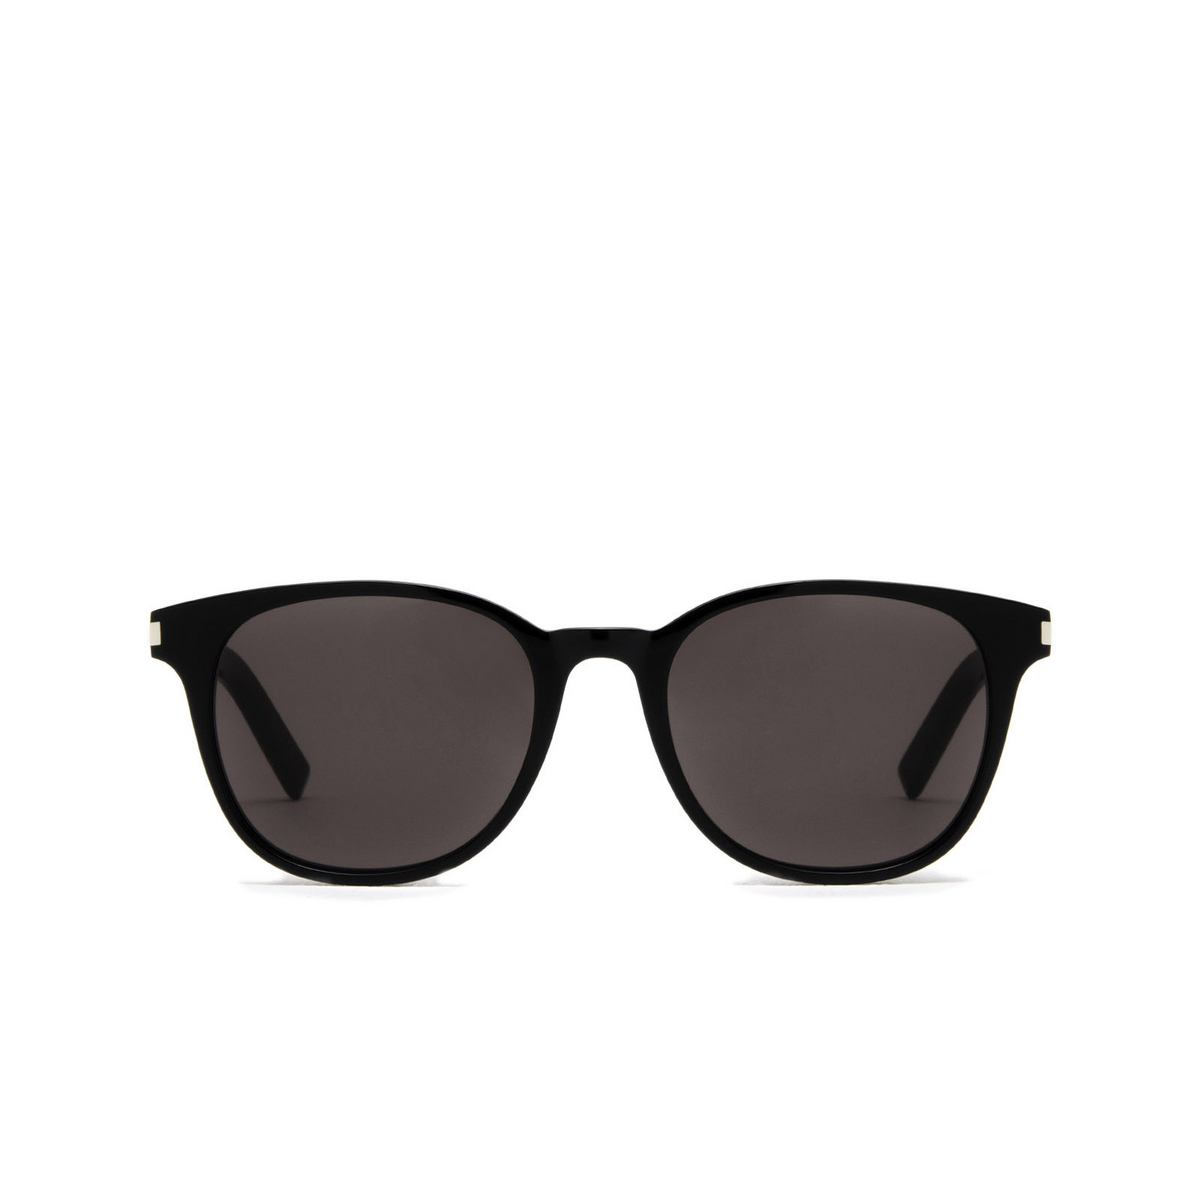 Saint Laurent® Square Sunglasses: SL 527 ZOE color Black 001 - front view.